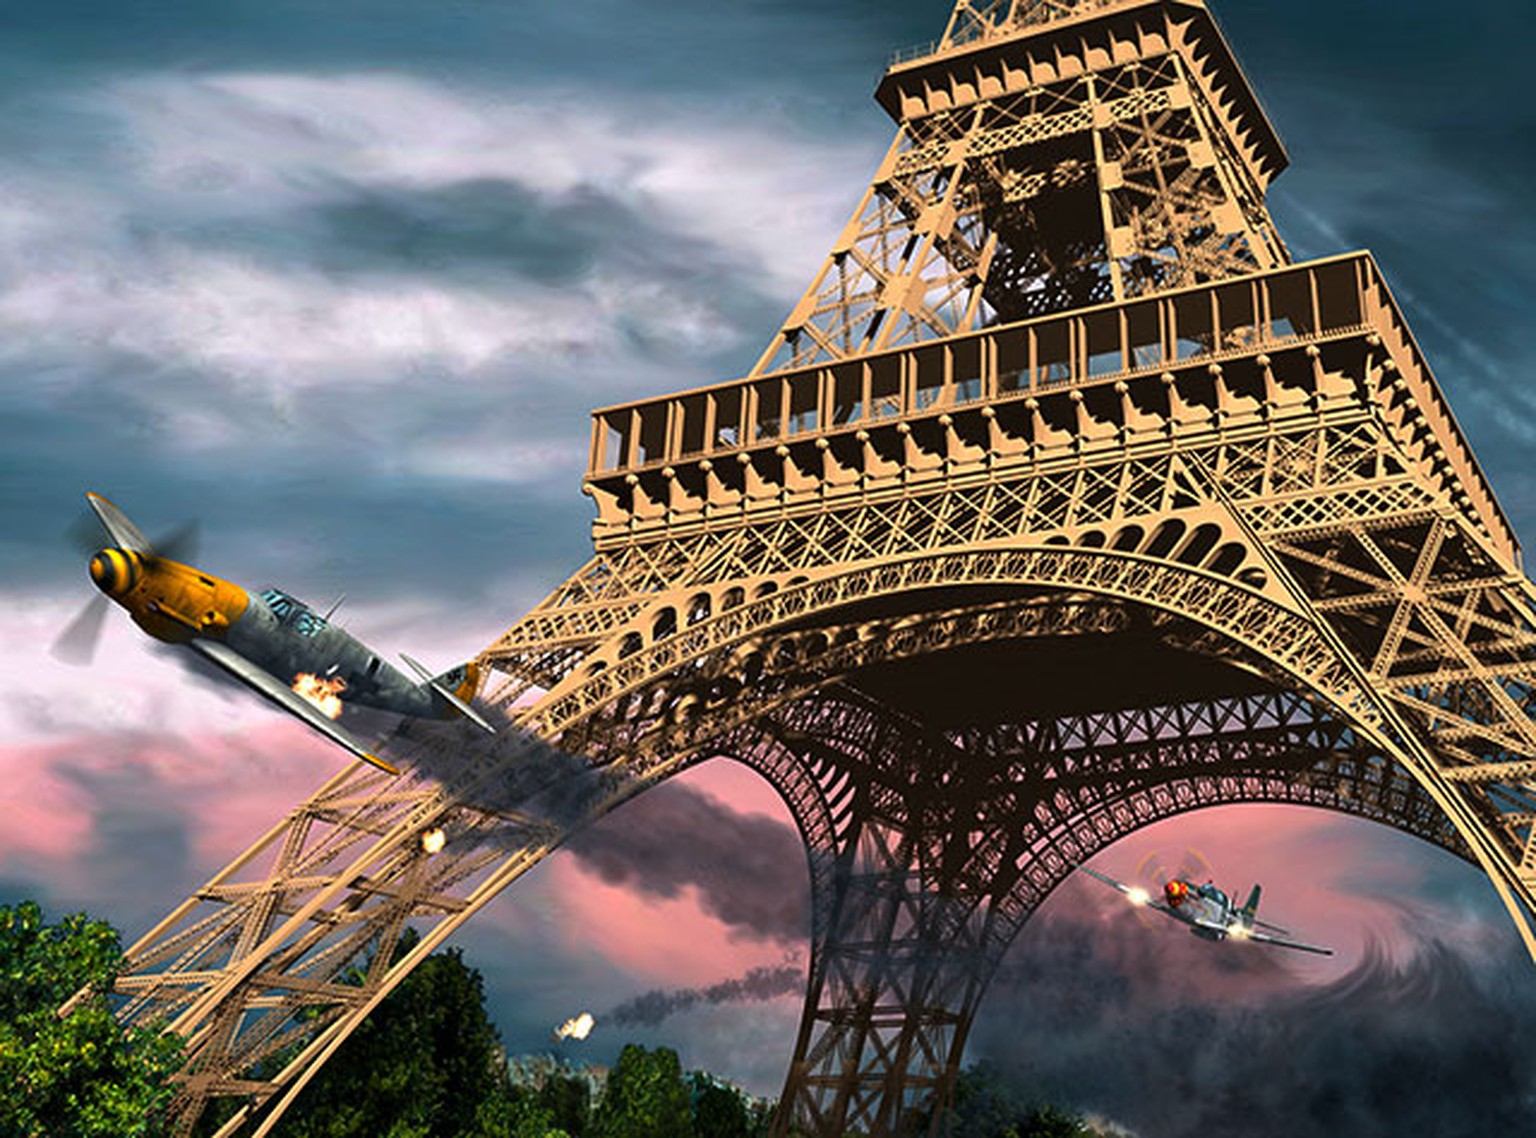 William Overstreet jr. fliegt 1944 seine P51 Mustang unter dem Eiffelturm hindurch. Künstlerische Darstellung von Len Krenzler/Action Art.
http://www.actionart.ca/